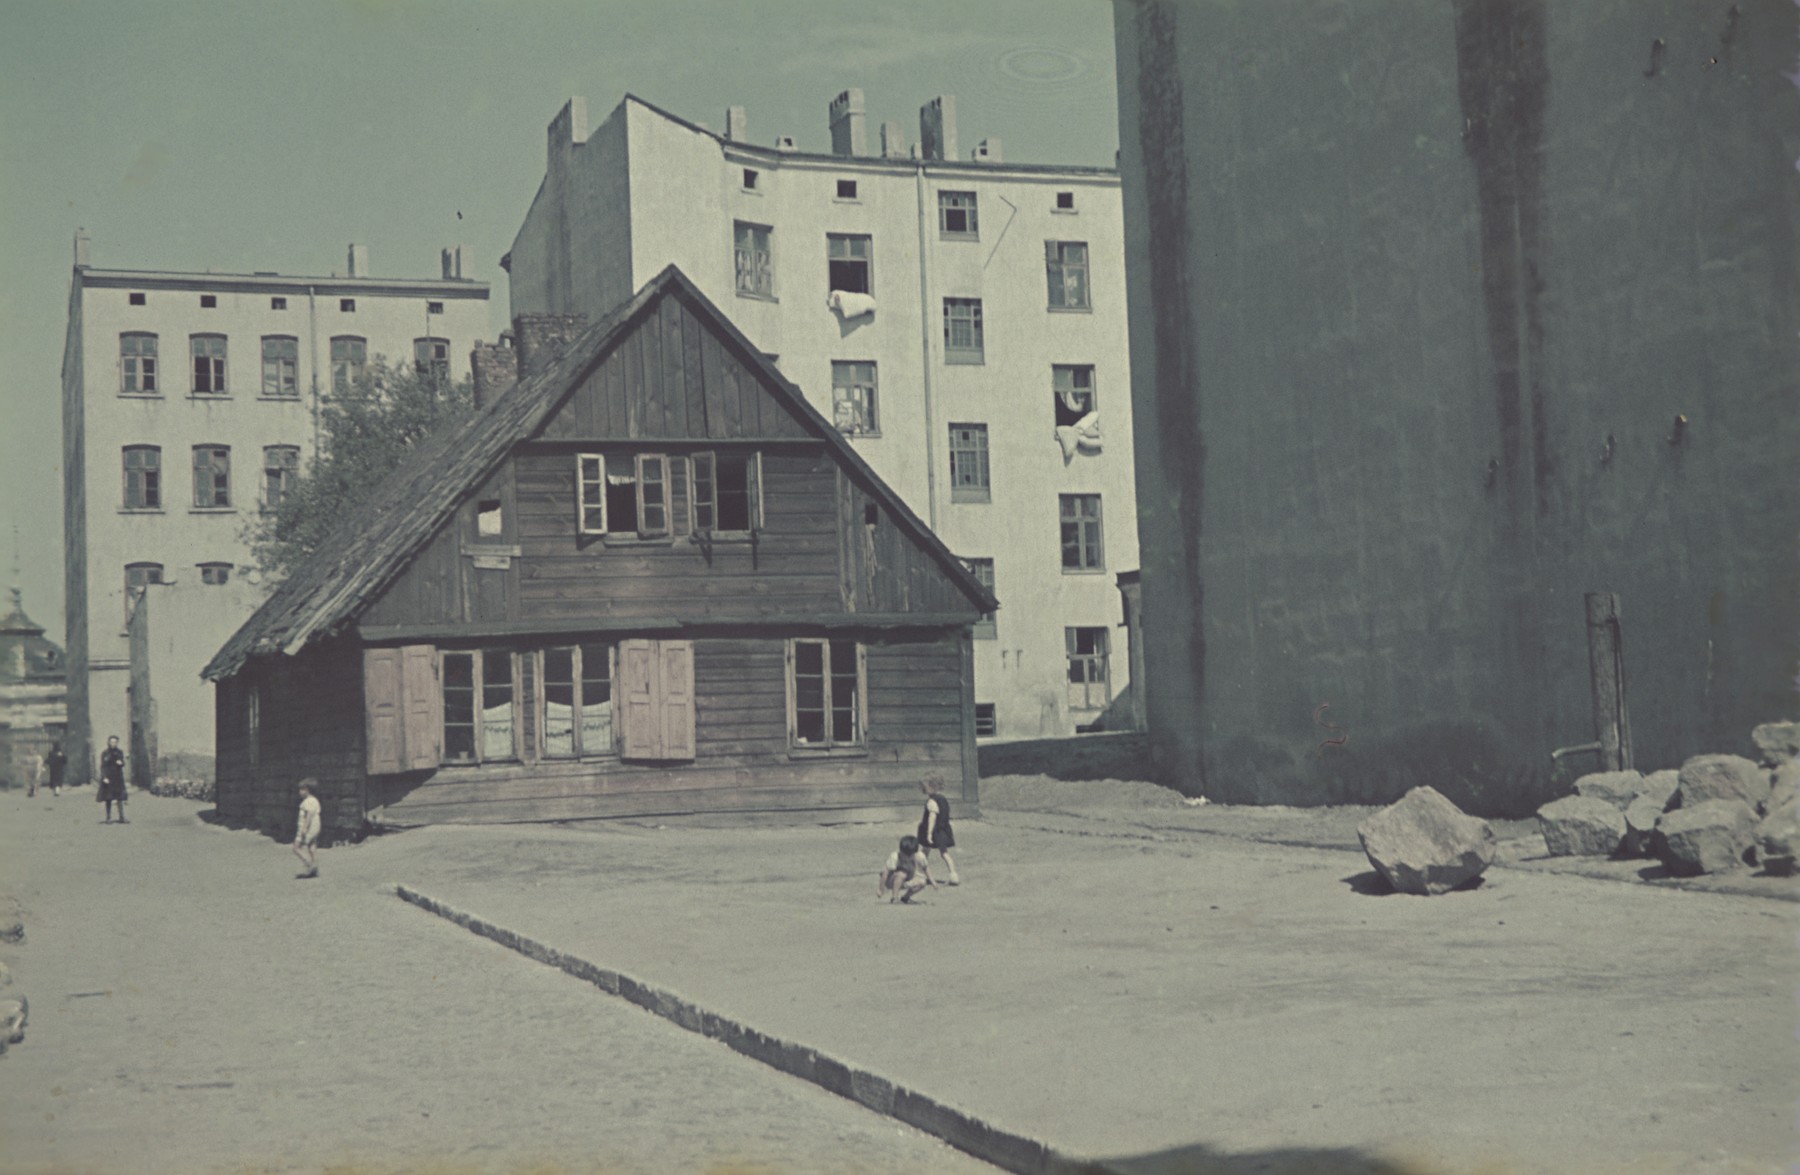 A street scene in the Lodz ghetto.